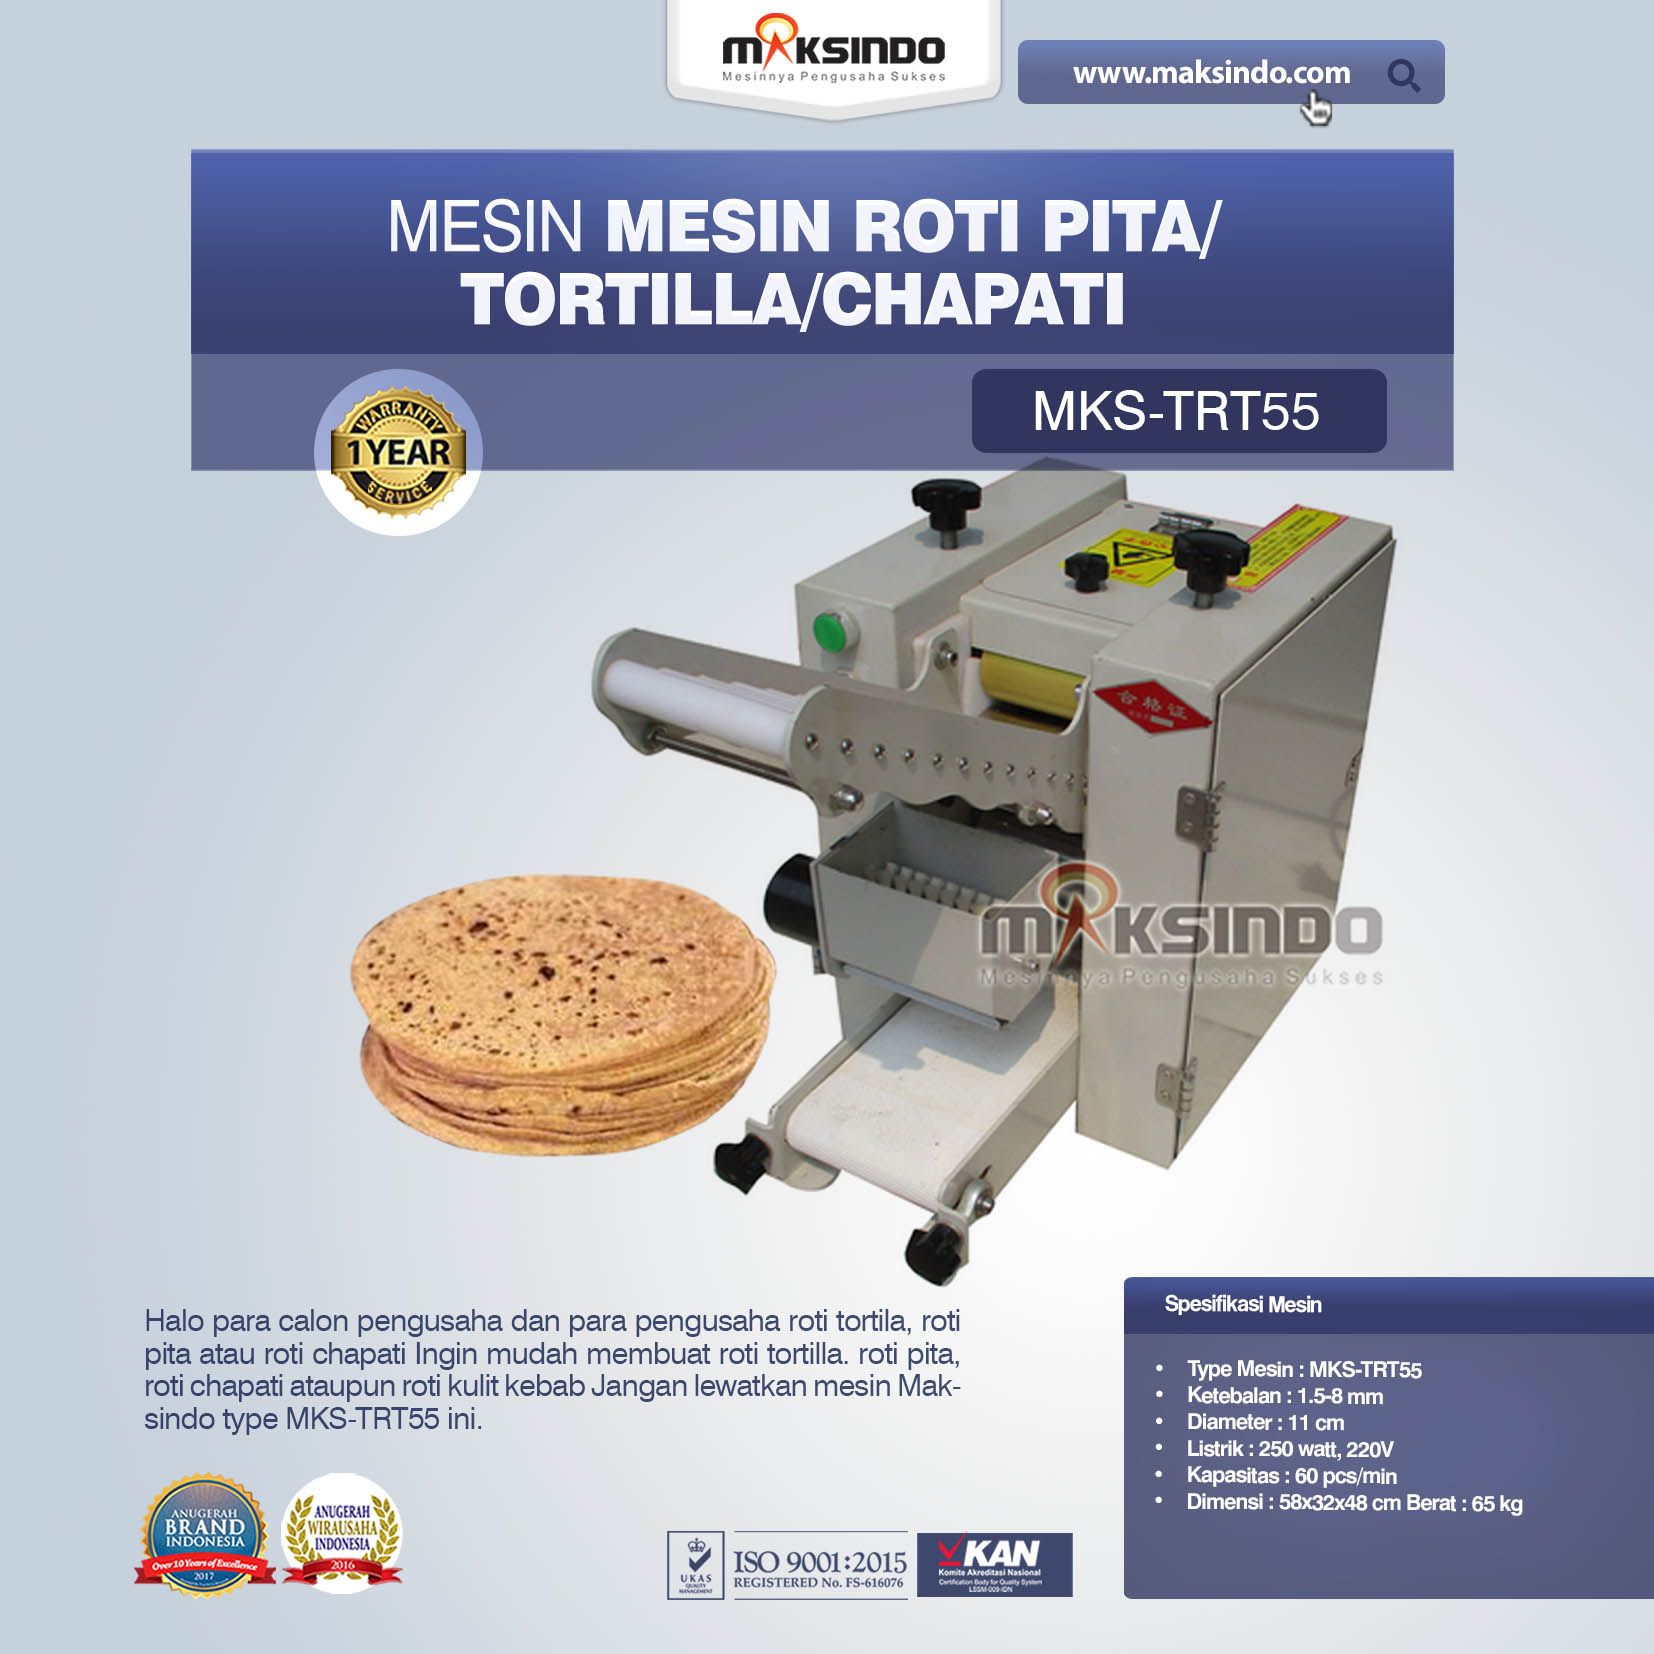 Jual Mesin Roti Pita/Tortilla/Chapati MKS-TRT55 Di Bogor